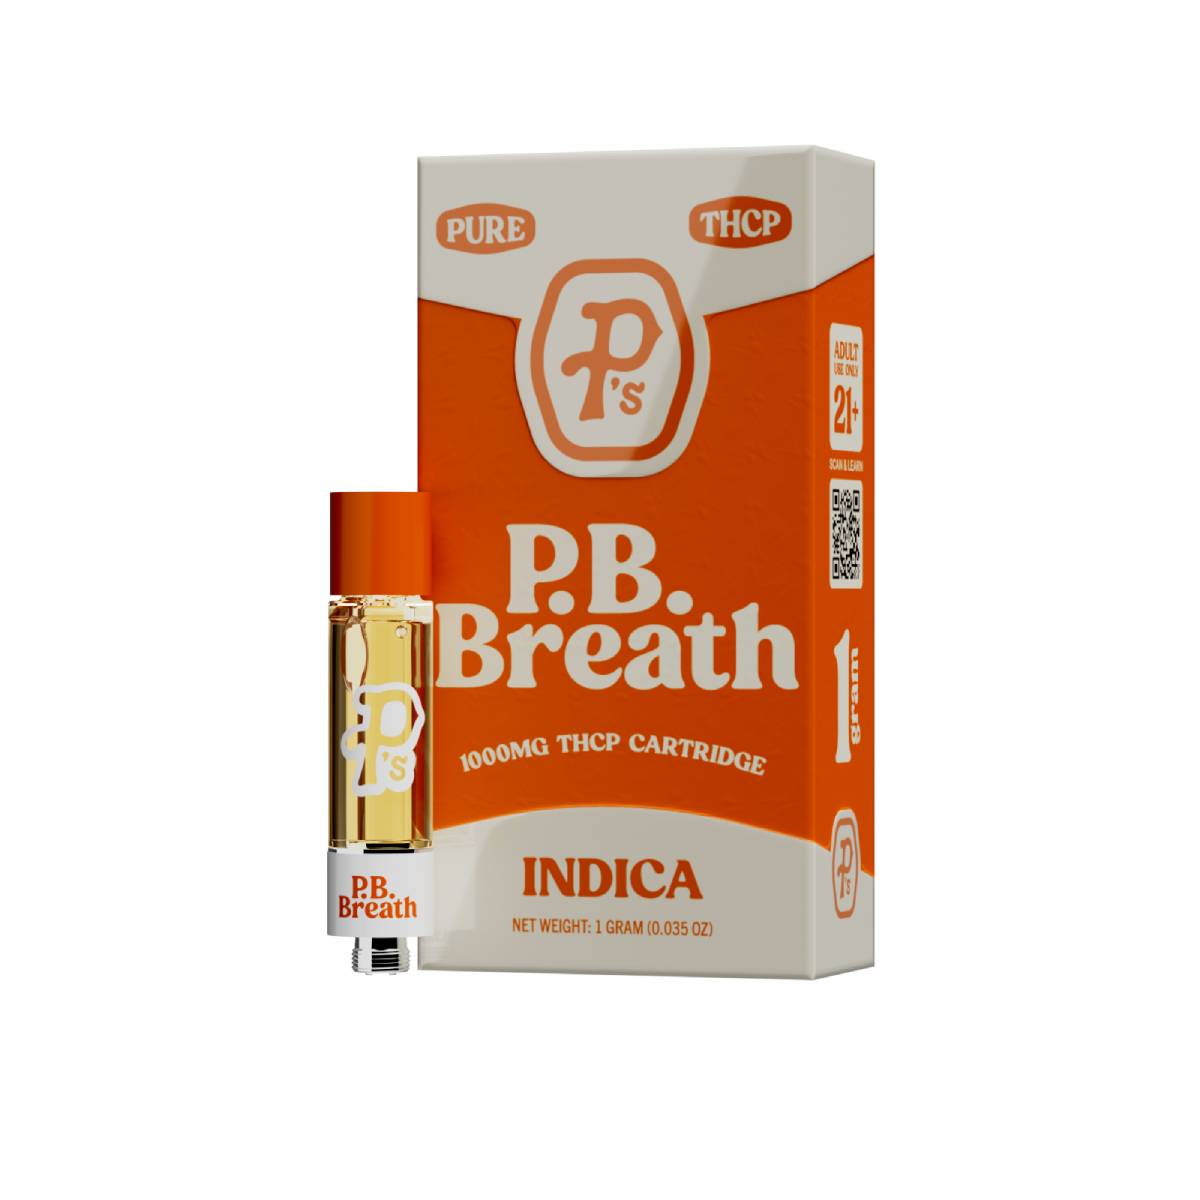 Pushin P’s Pure THCP Cartridge 1g Best Price